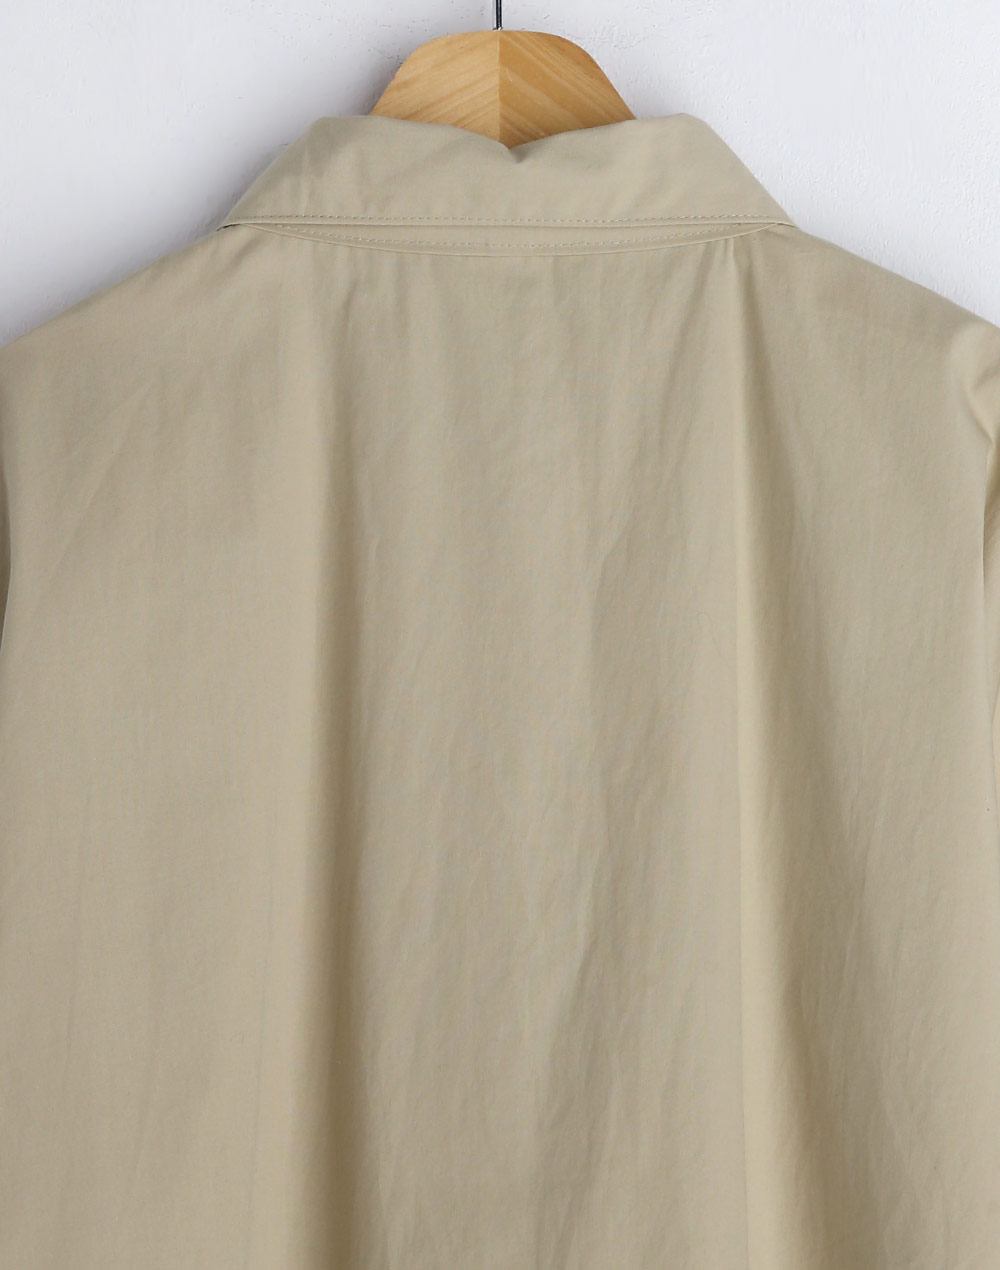 collar point shirt・t276222（ブラウス/シャツ）| chipichan.1215 | 東京ガールズマーケット